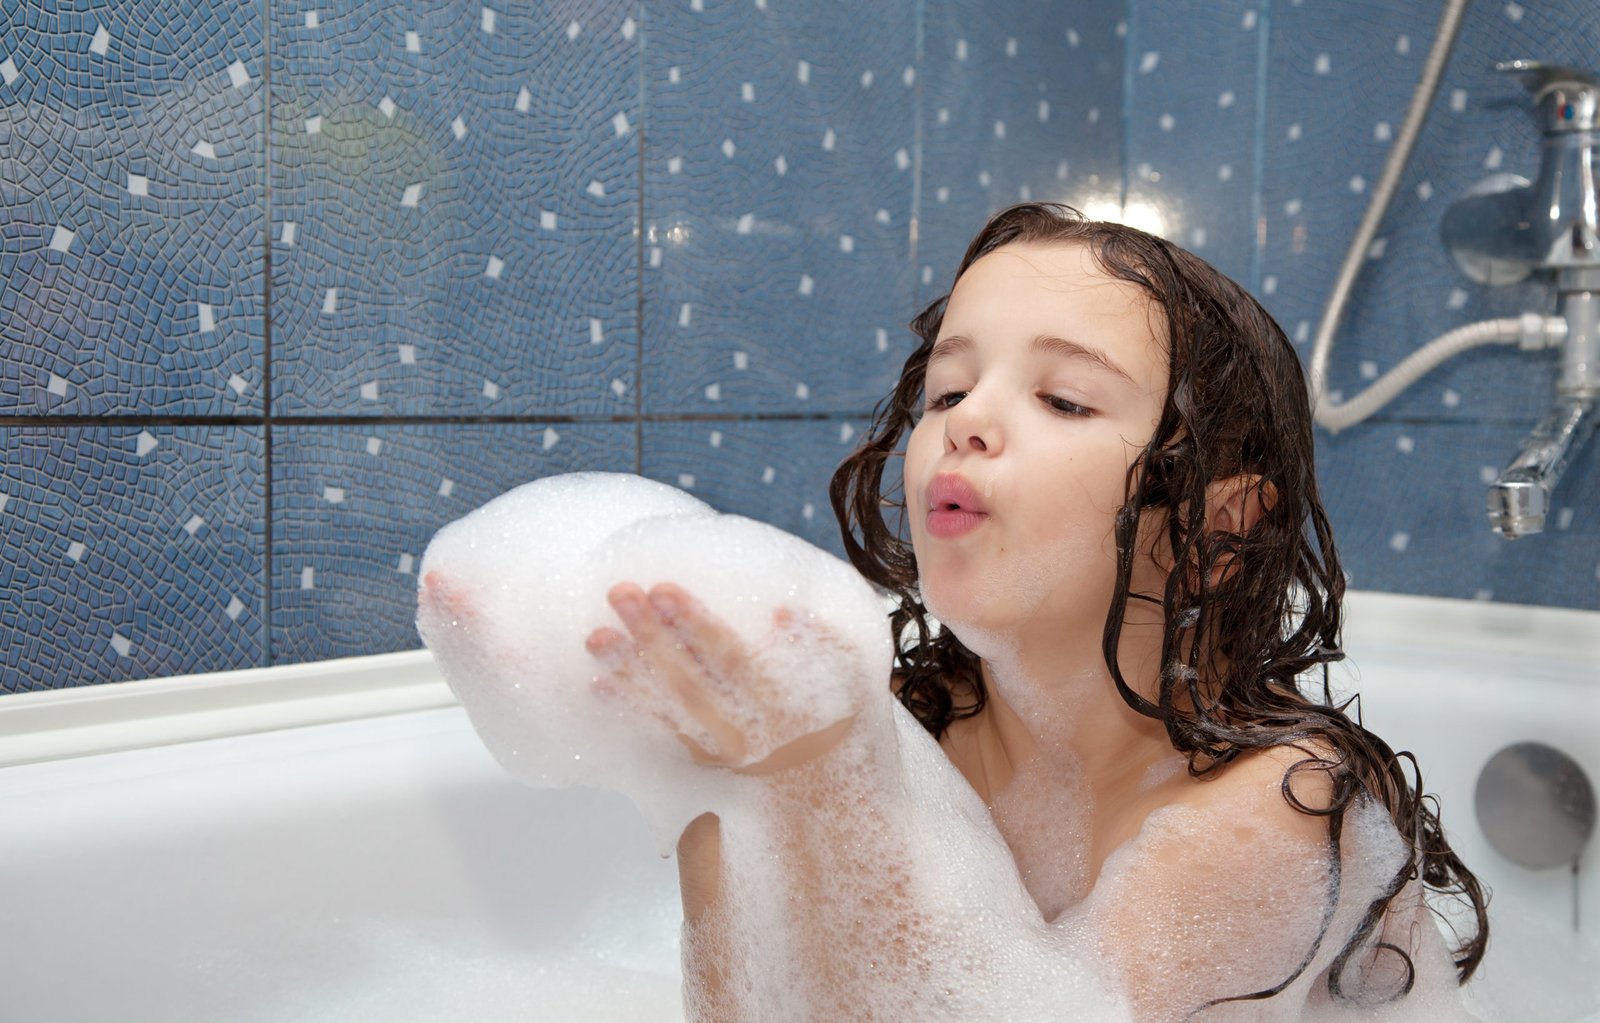 Top 10 Melhores Shampoos Infantis em 2022 (Johnson's e mais)